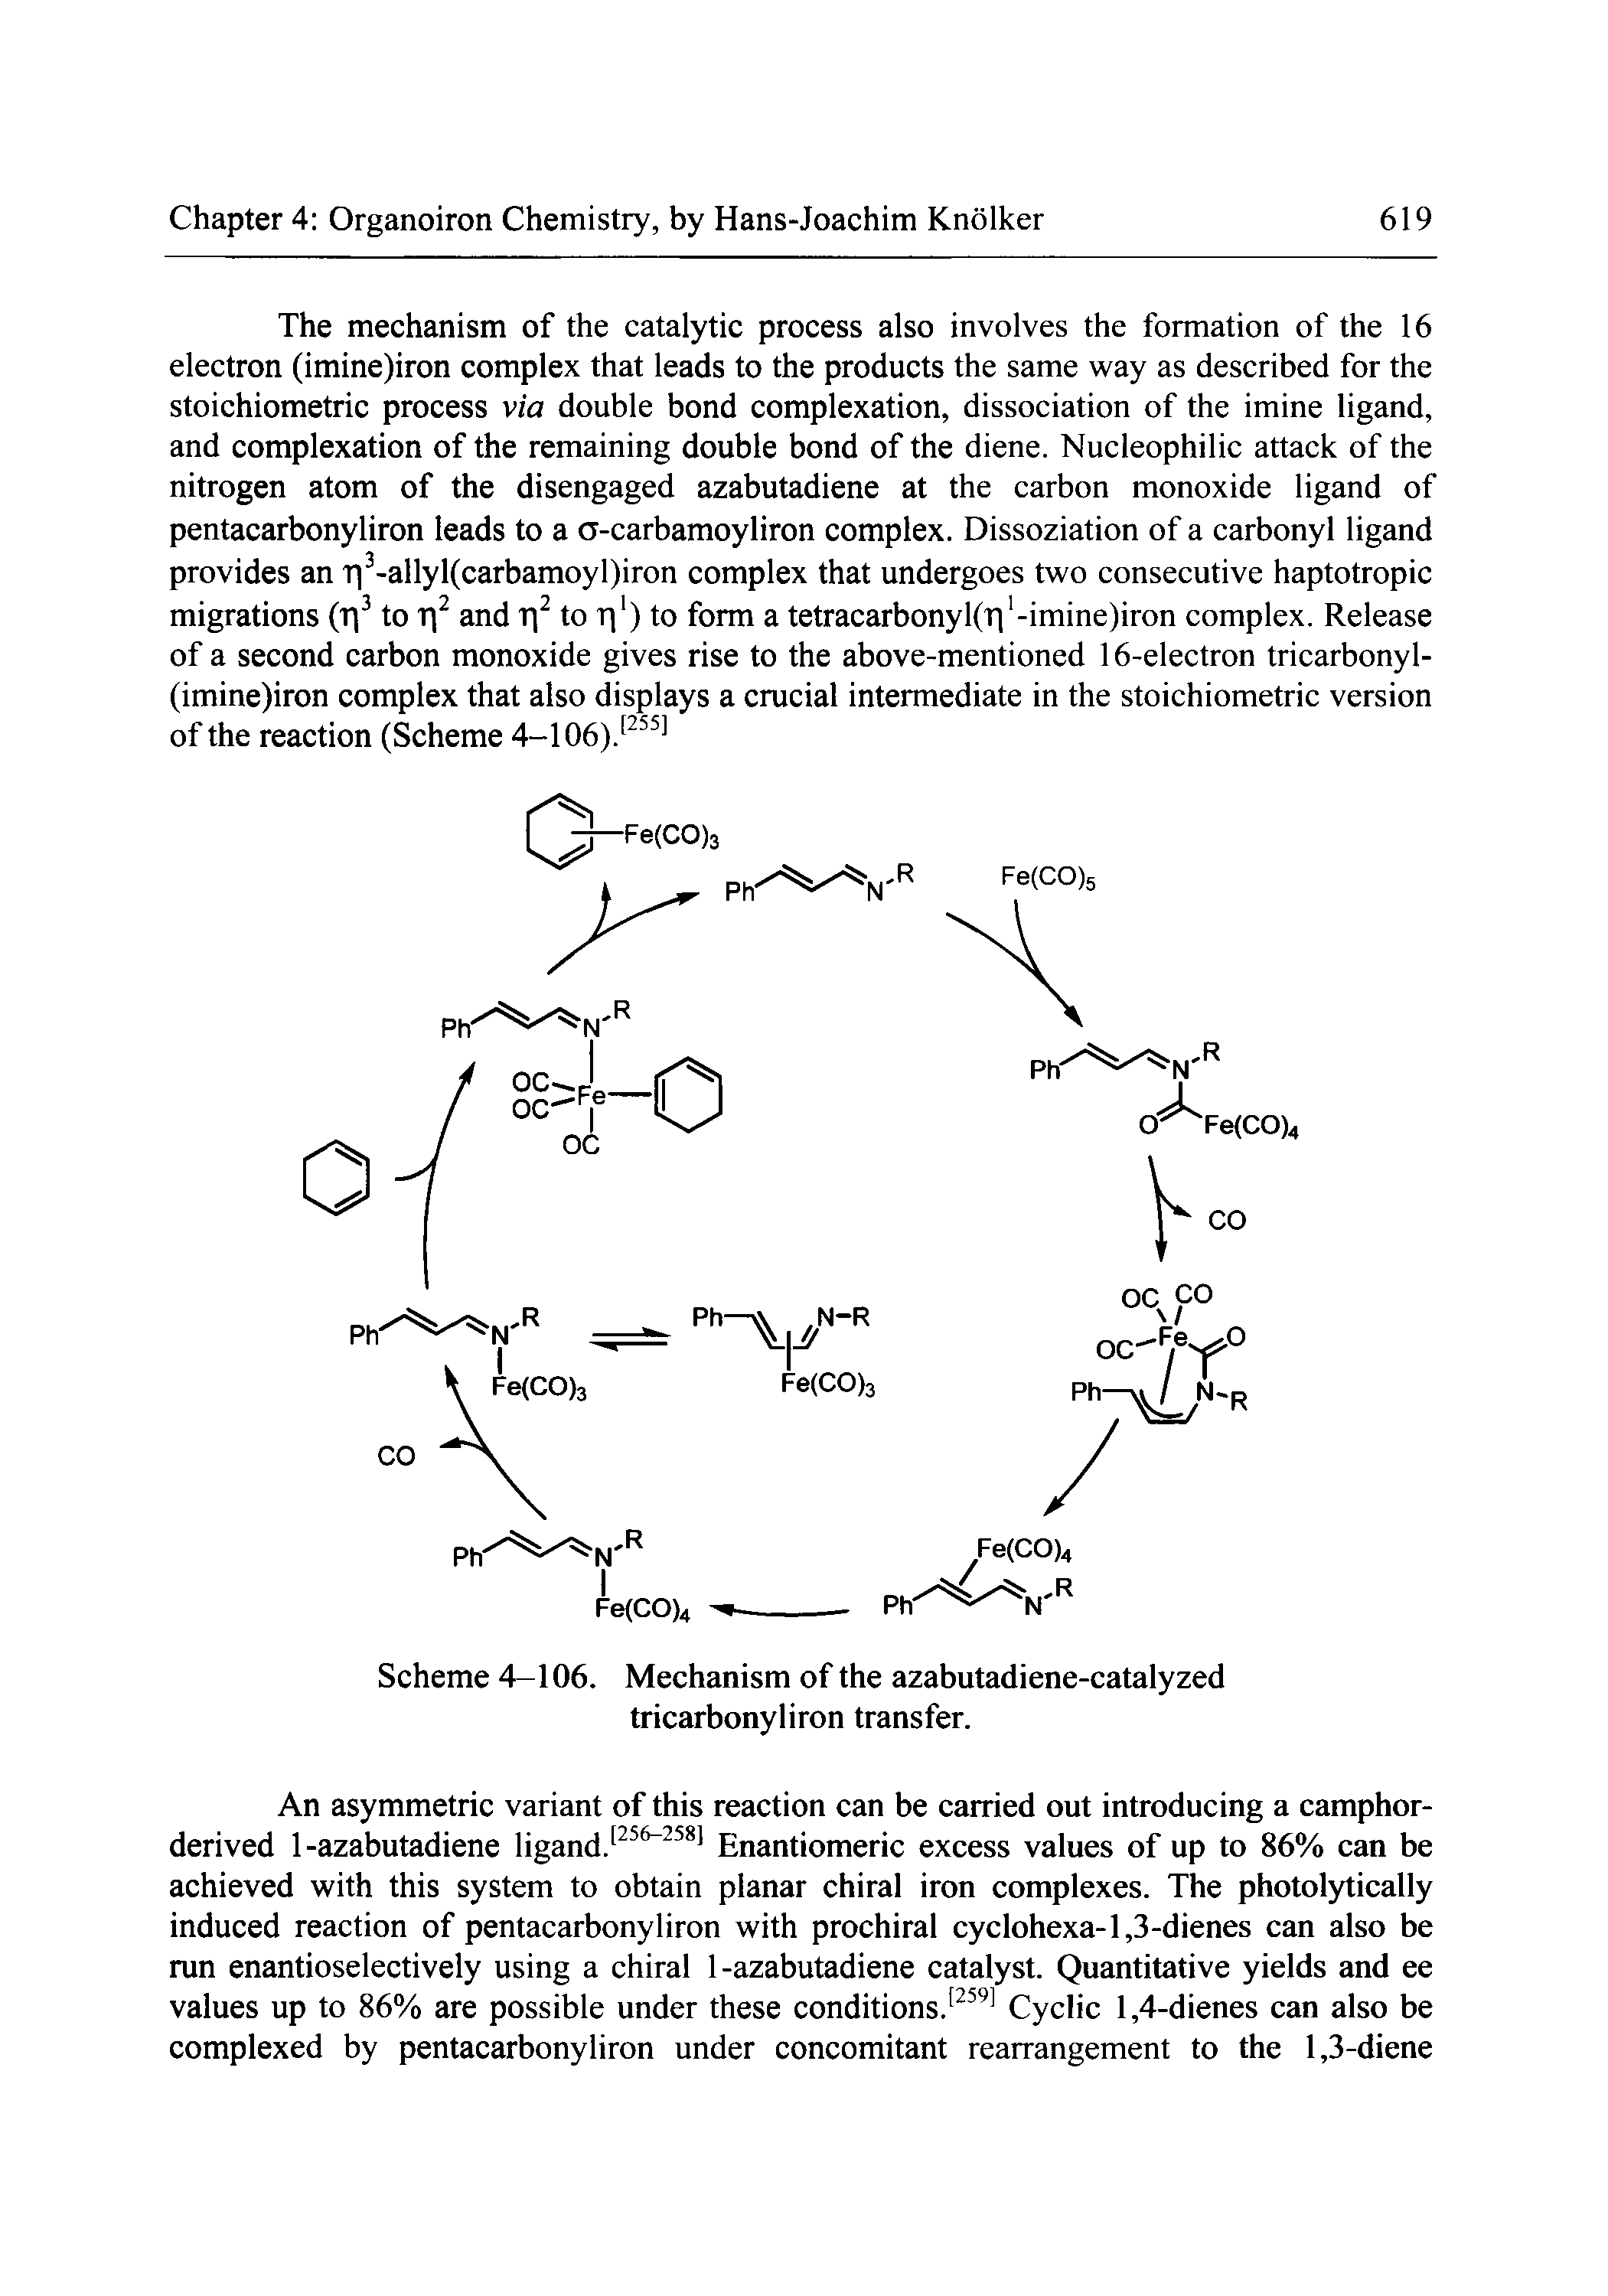 Scheme 4—106. Mechanism of the azabutadiene-catalyzed tricarbonyliron transfer.